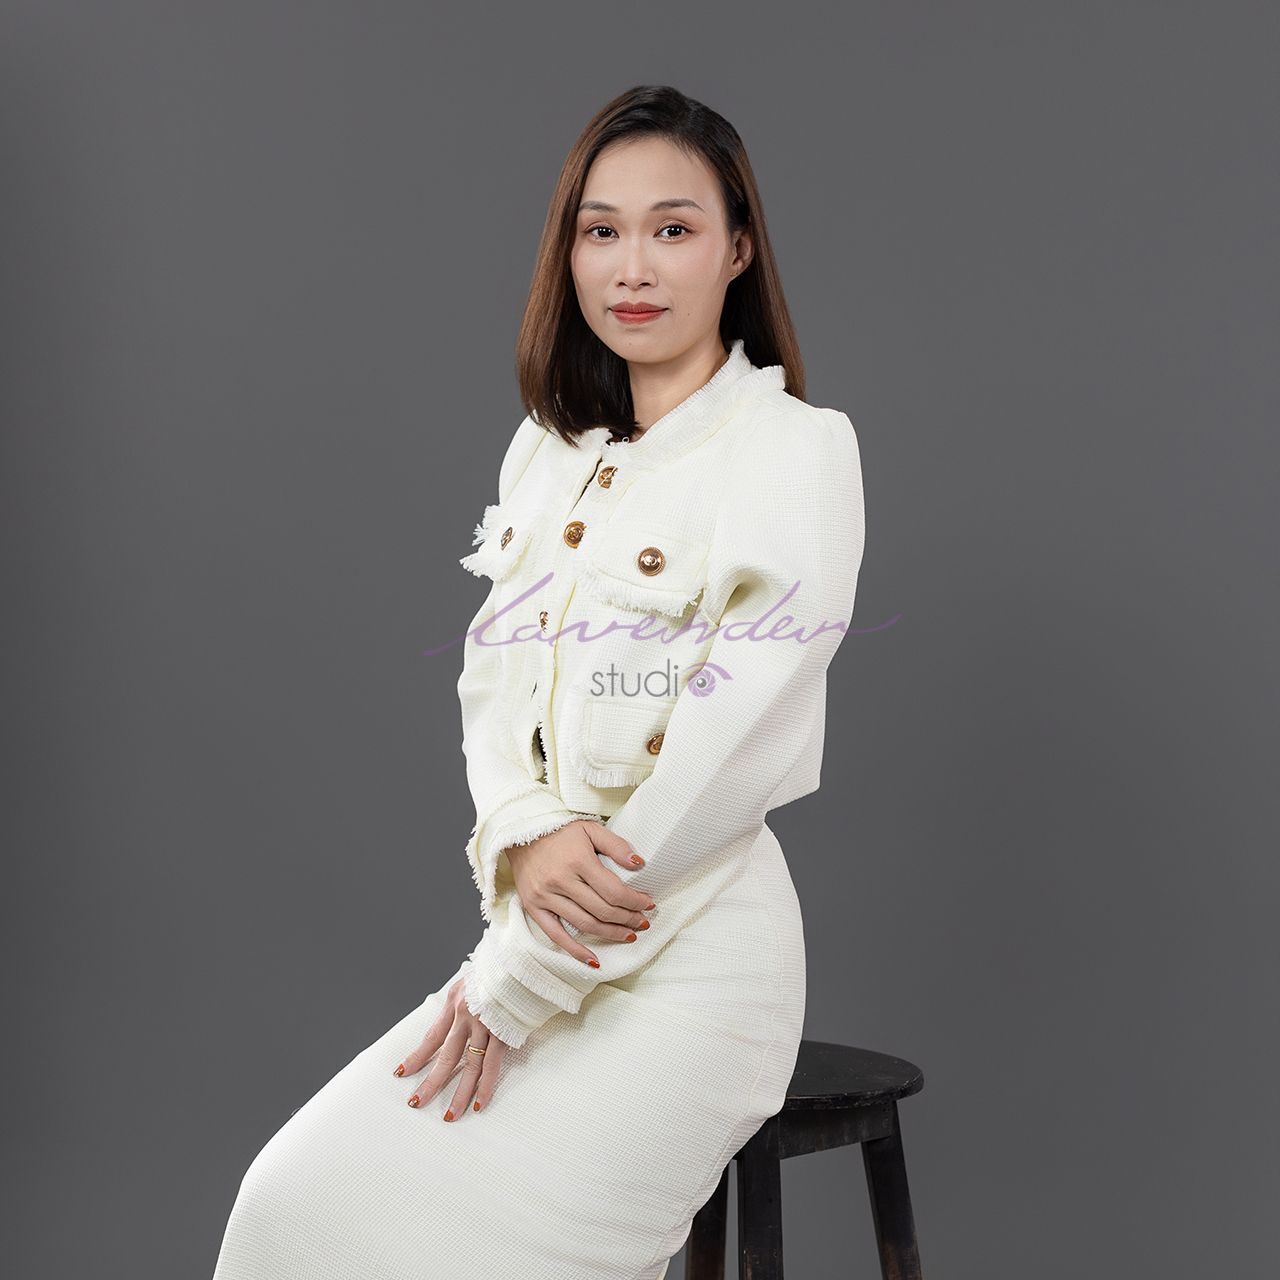 Chụp ảnh chân dung doanh nhân nữ giới ở Đà Nẵng bao nhiêu